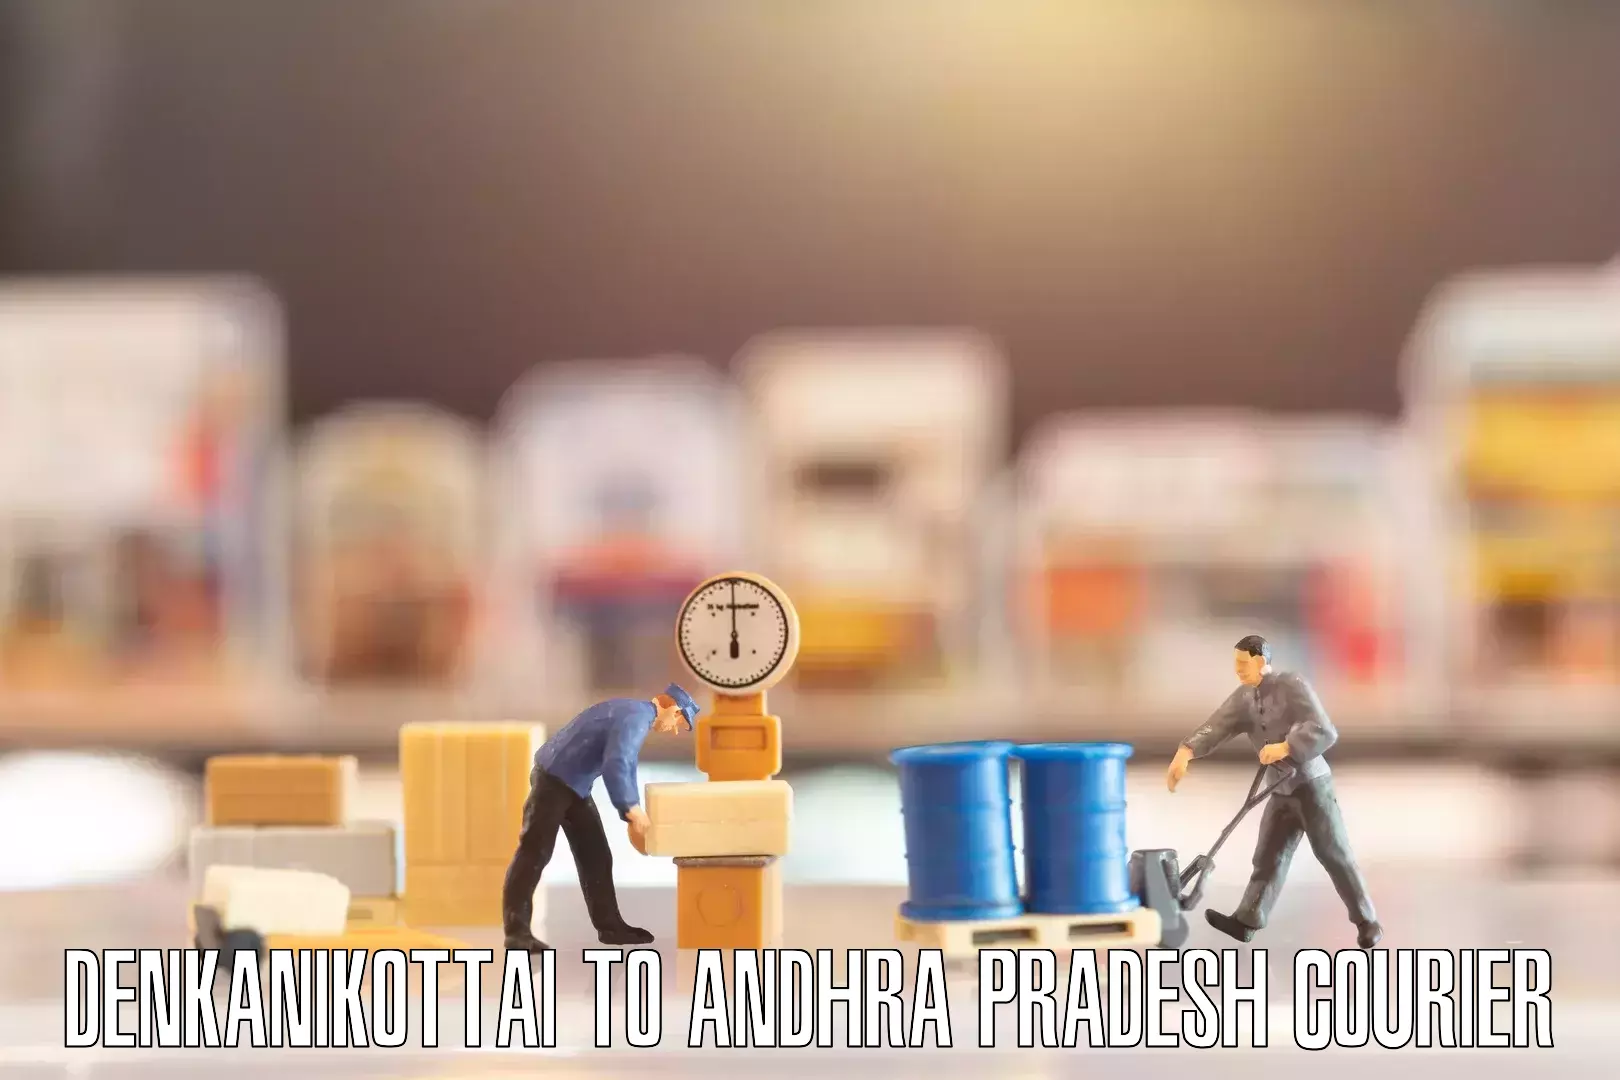 Furniture transport service Denkanikottai to Andhra Pradesh